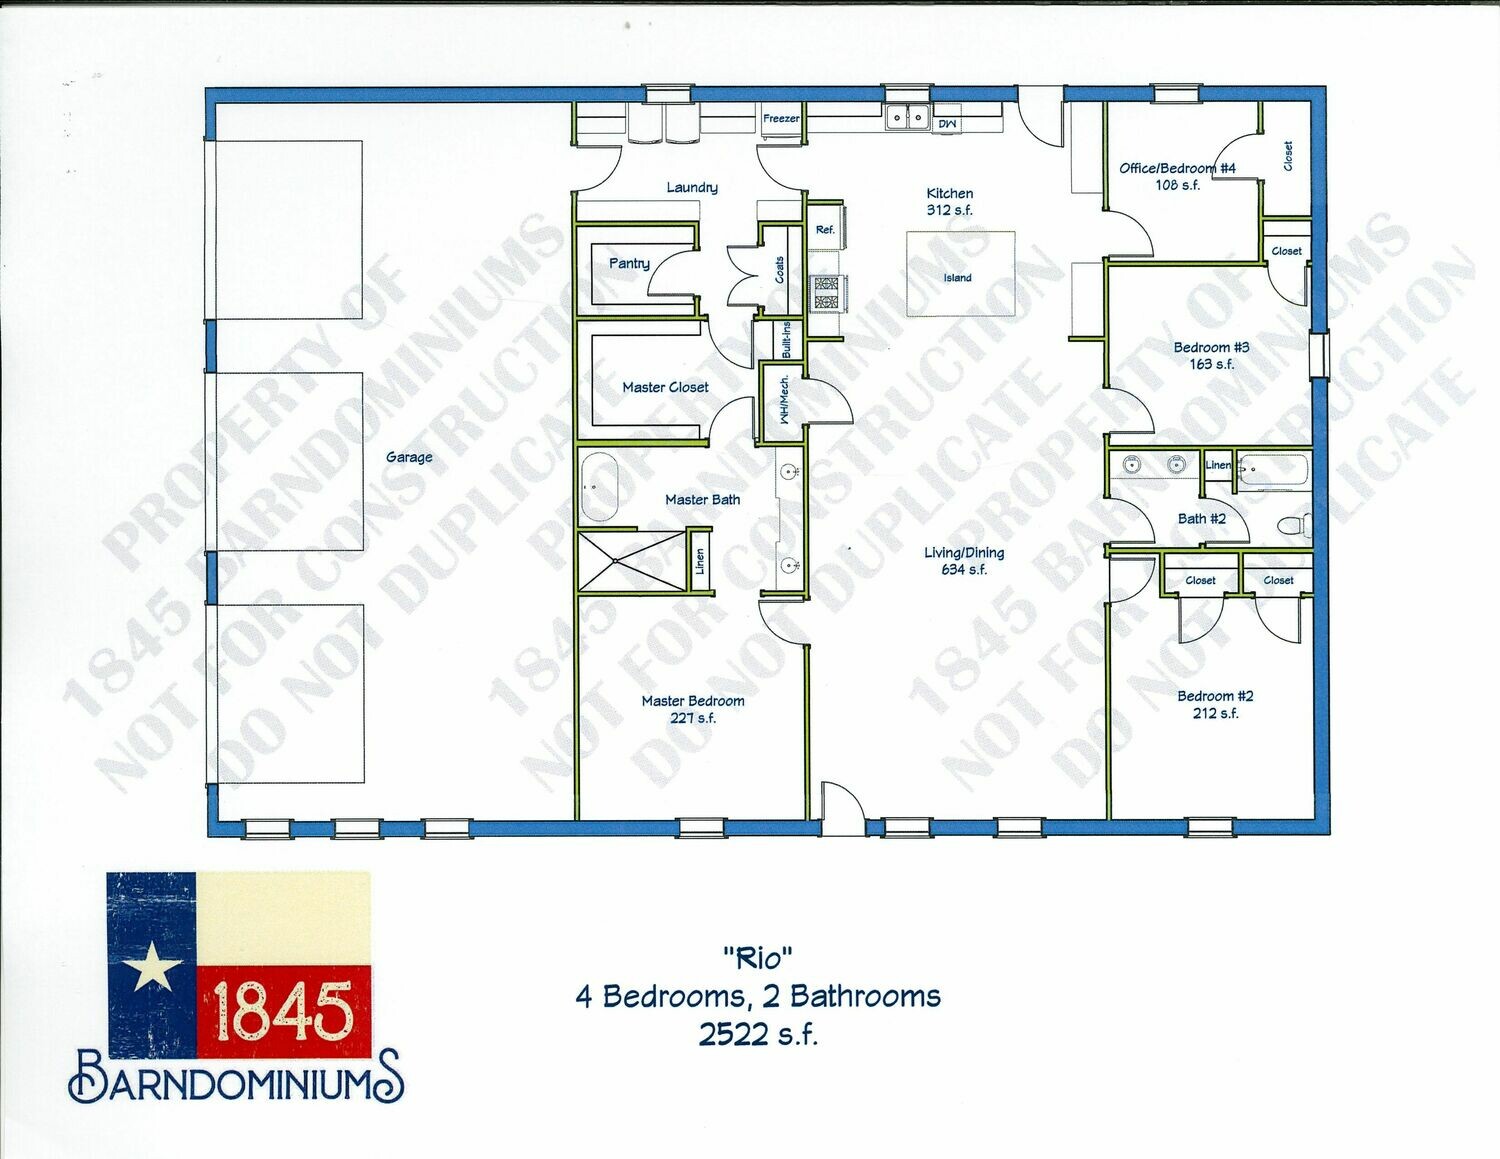 "Rio" Floor Plan 4 bedroom, 2 bath - 2552 sf